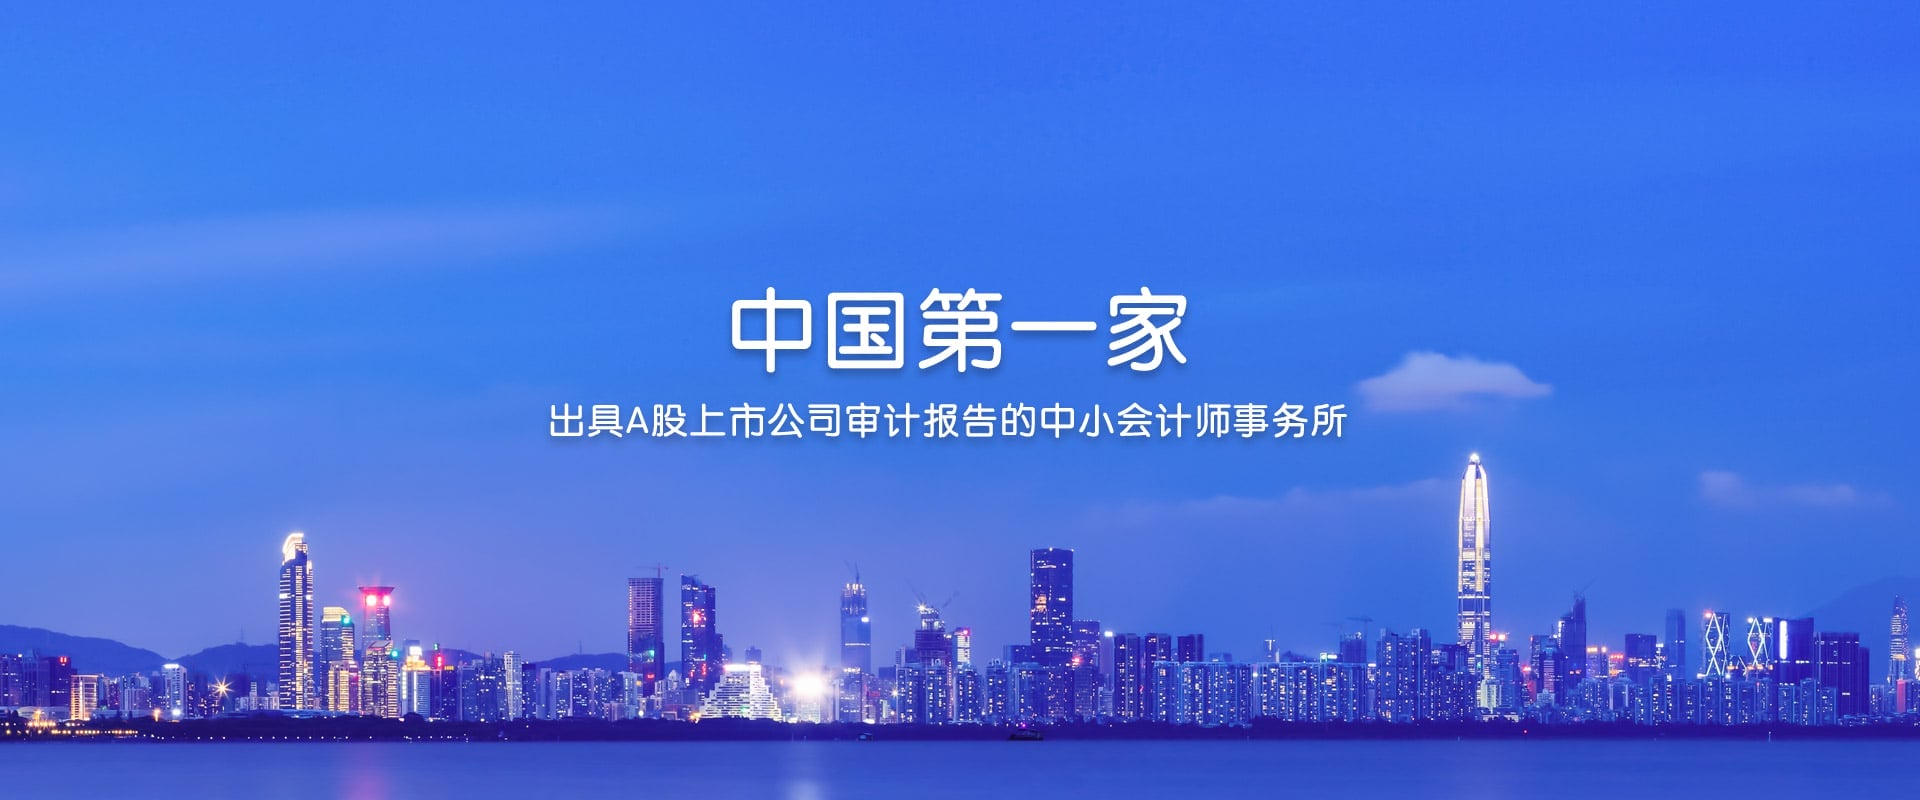 中国第一家出具A股上市公司审计报告的中小会计师事务所